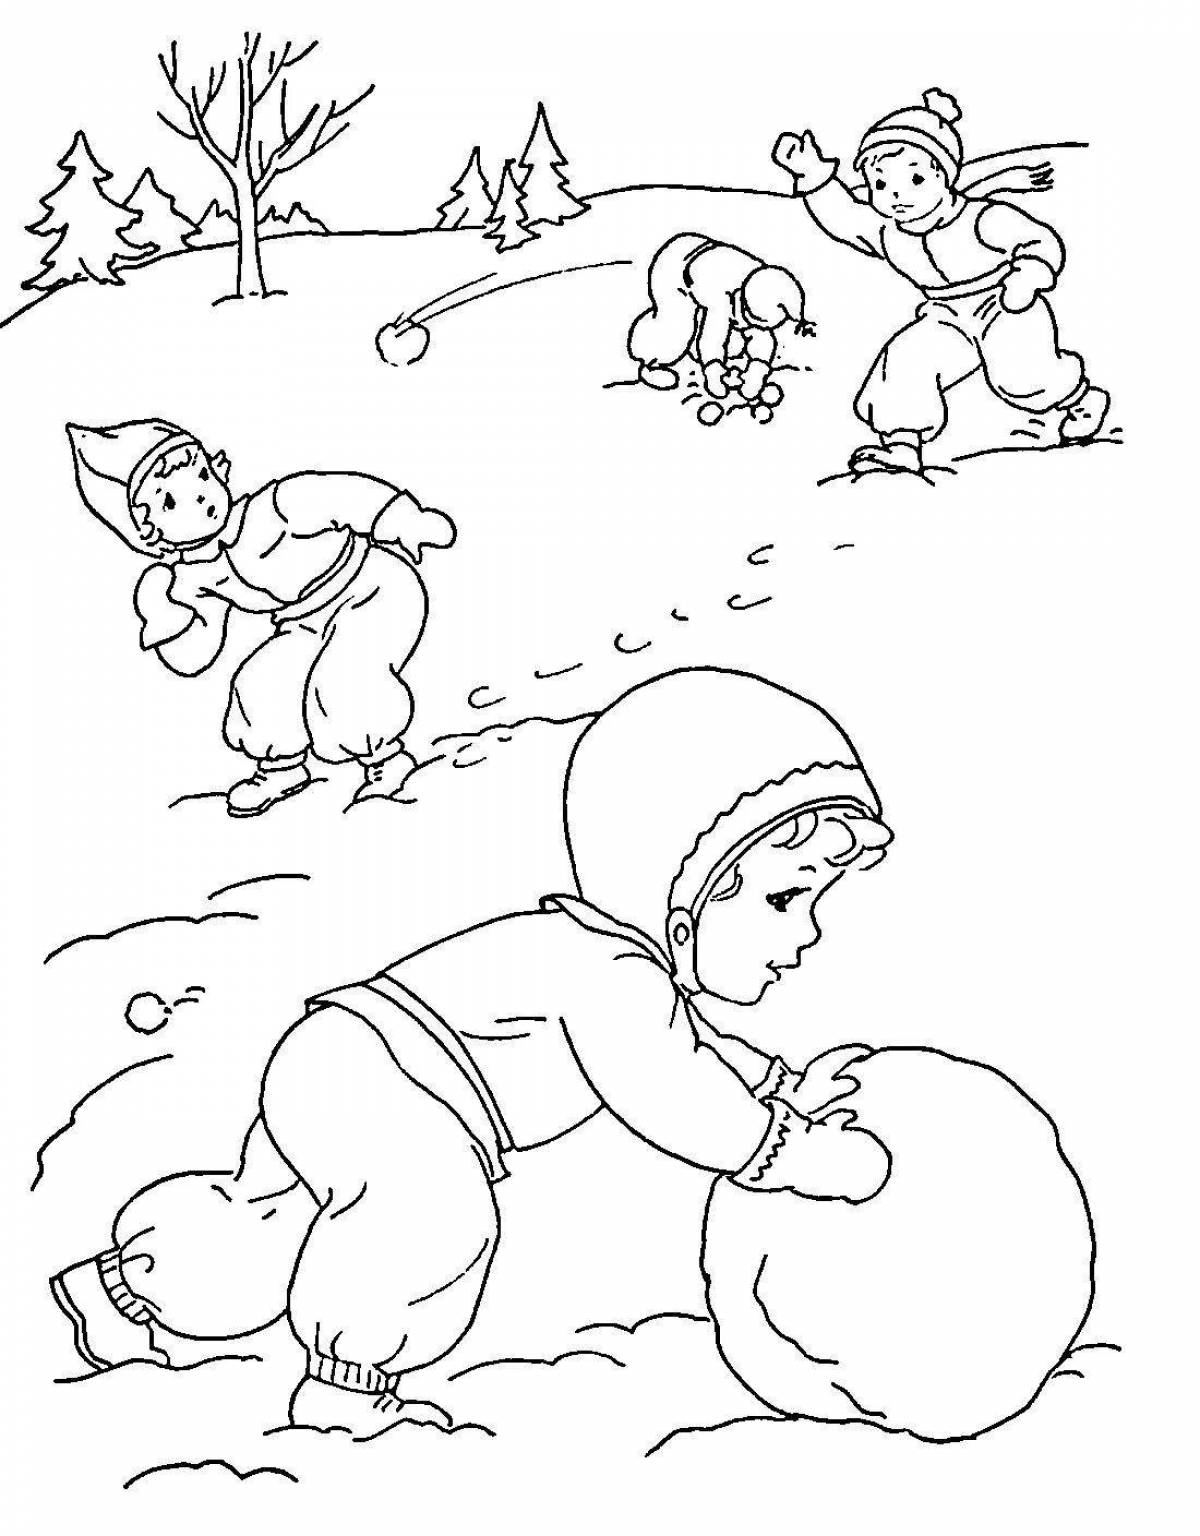 Children outdoors in winter #3